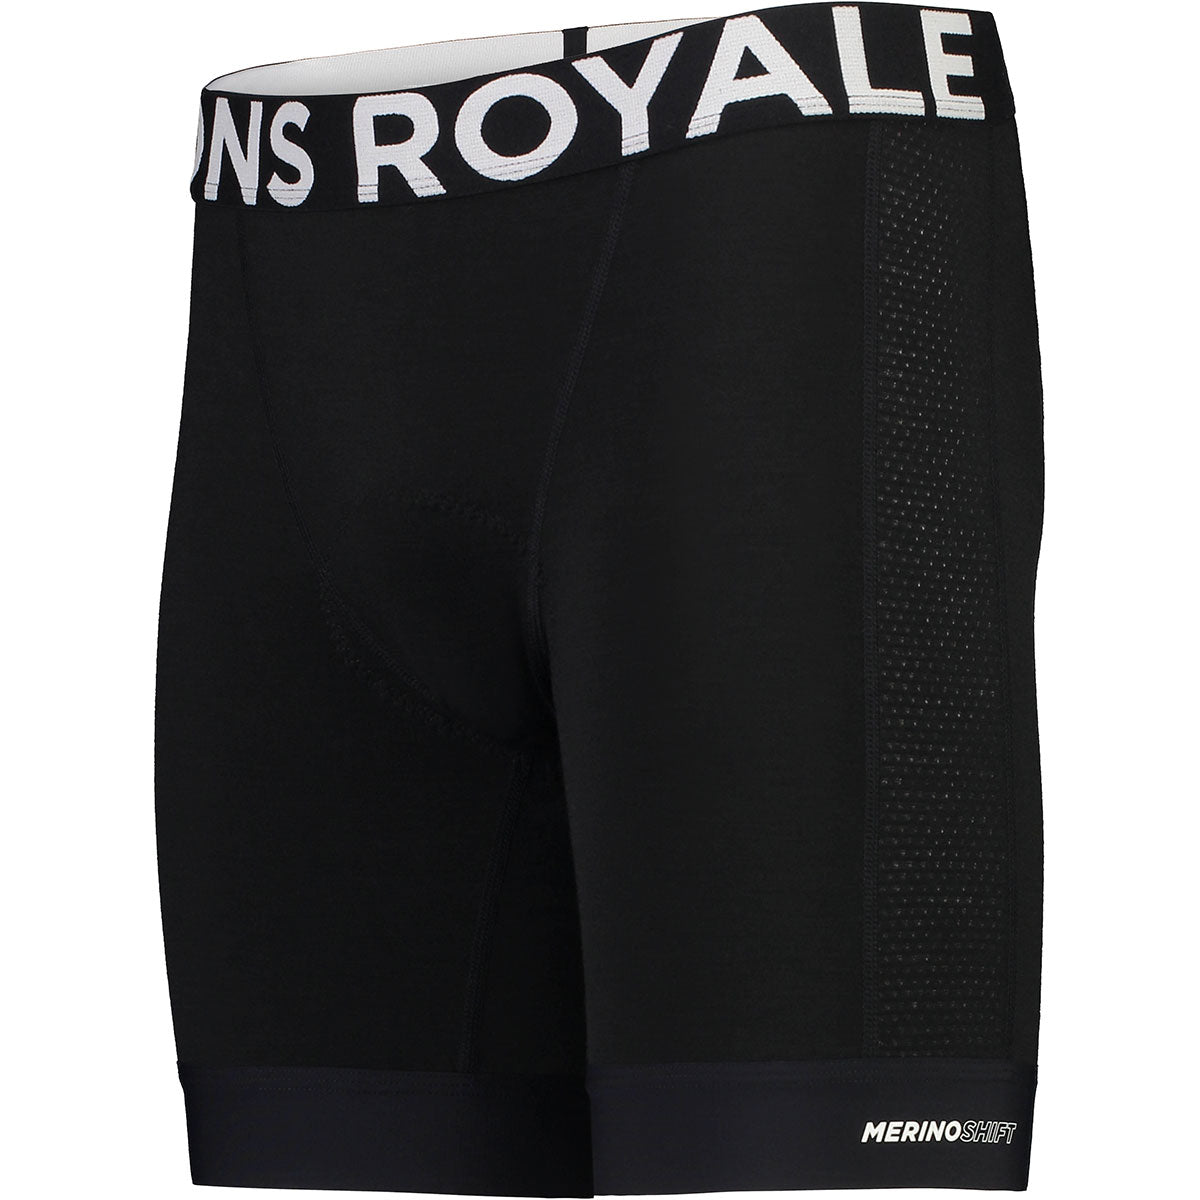 Mons Royale - Men's Epic Bike Liner Shorts - Black